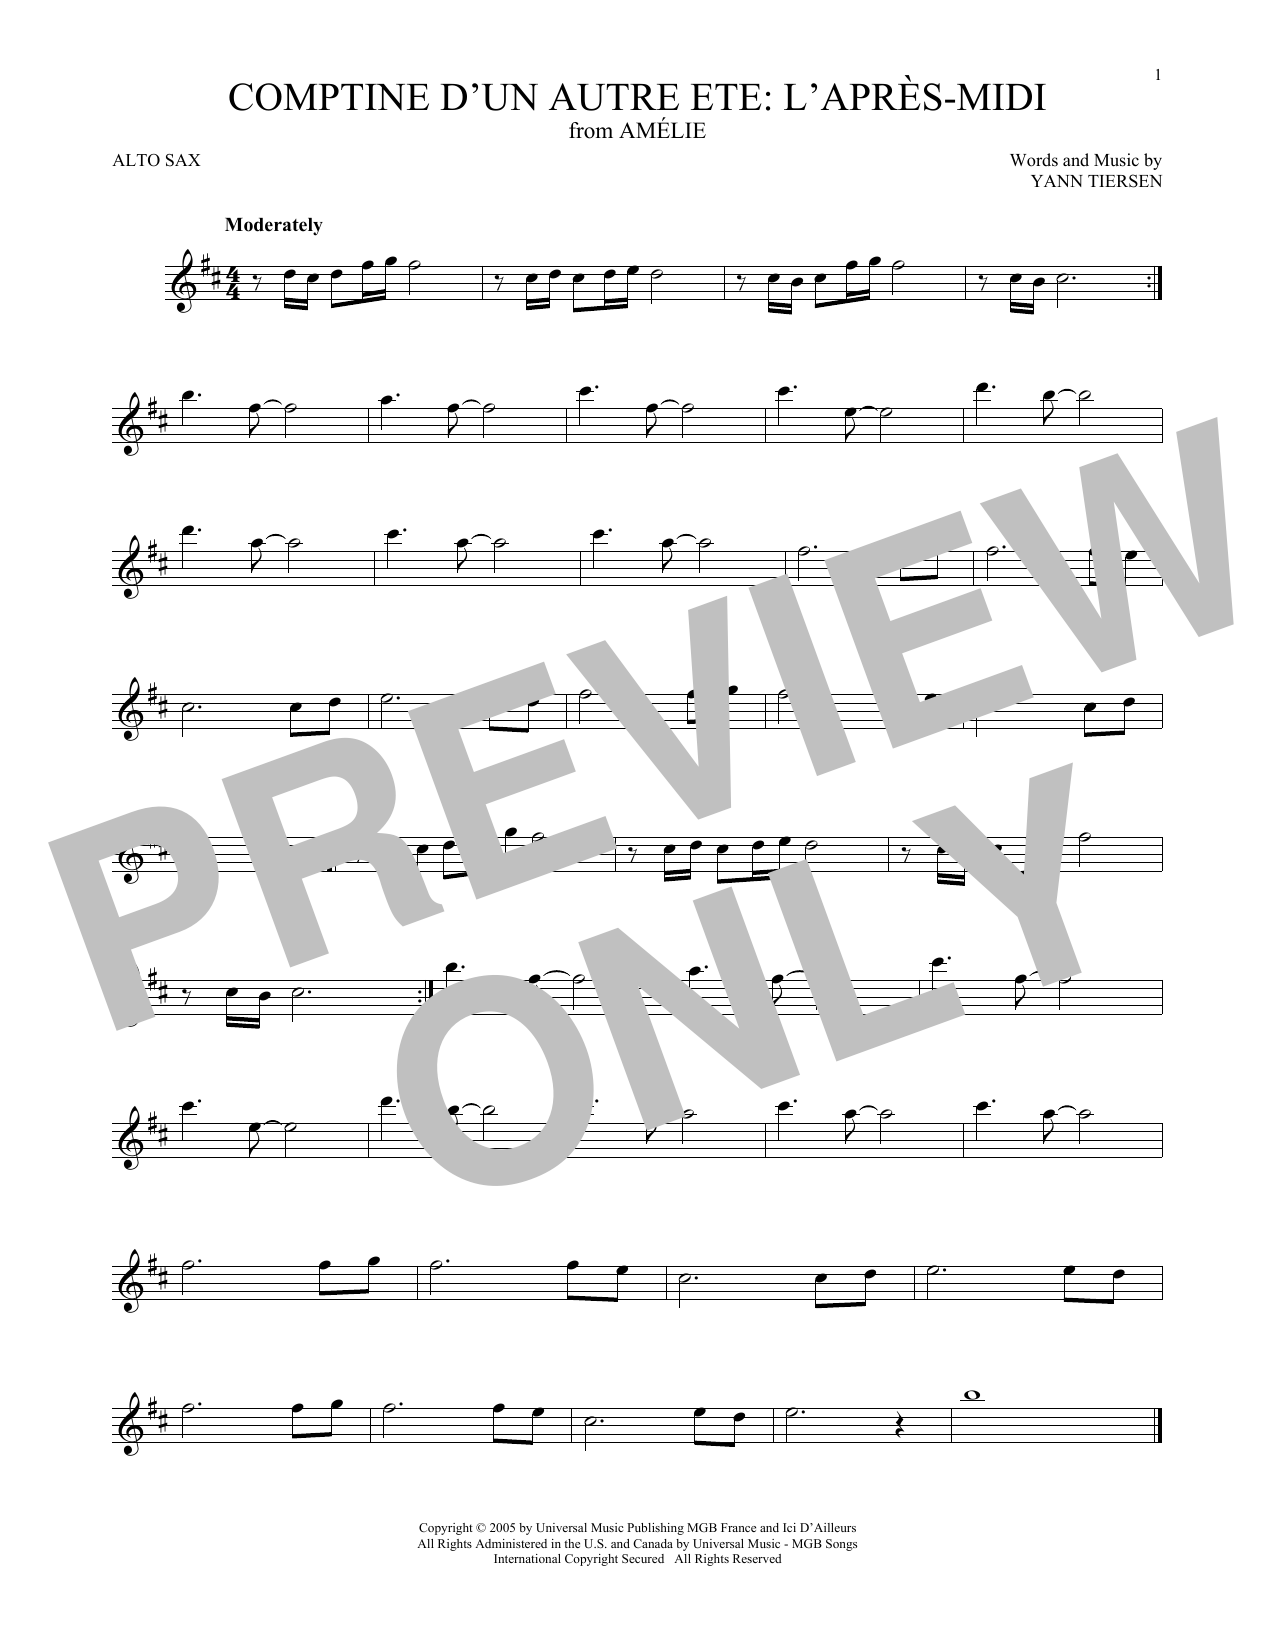 Yann Tiersen Comptine d'un autre été: L'après-midi (from Amelie) sheet music notes and chords arranged for French Horn Solo